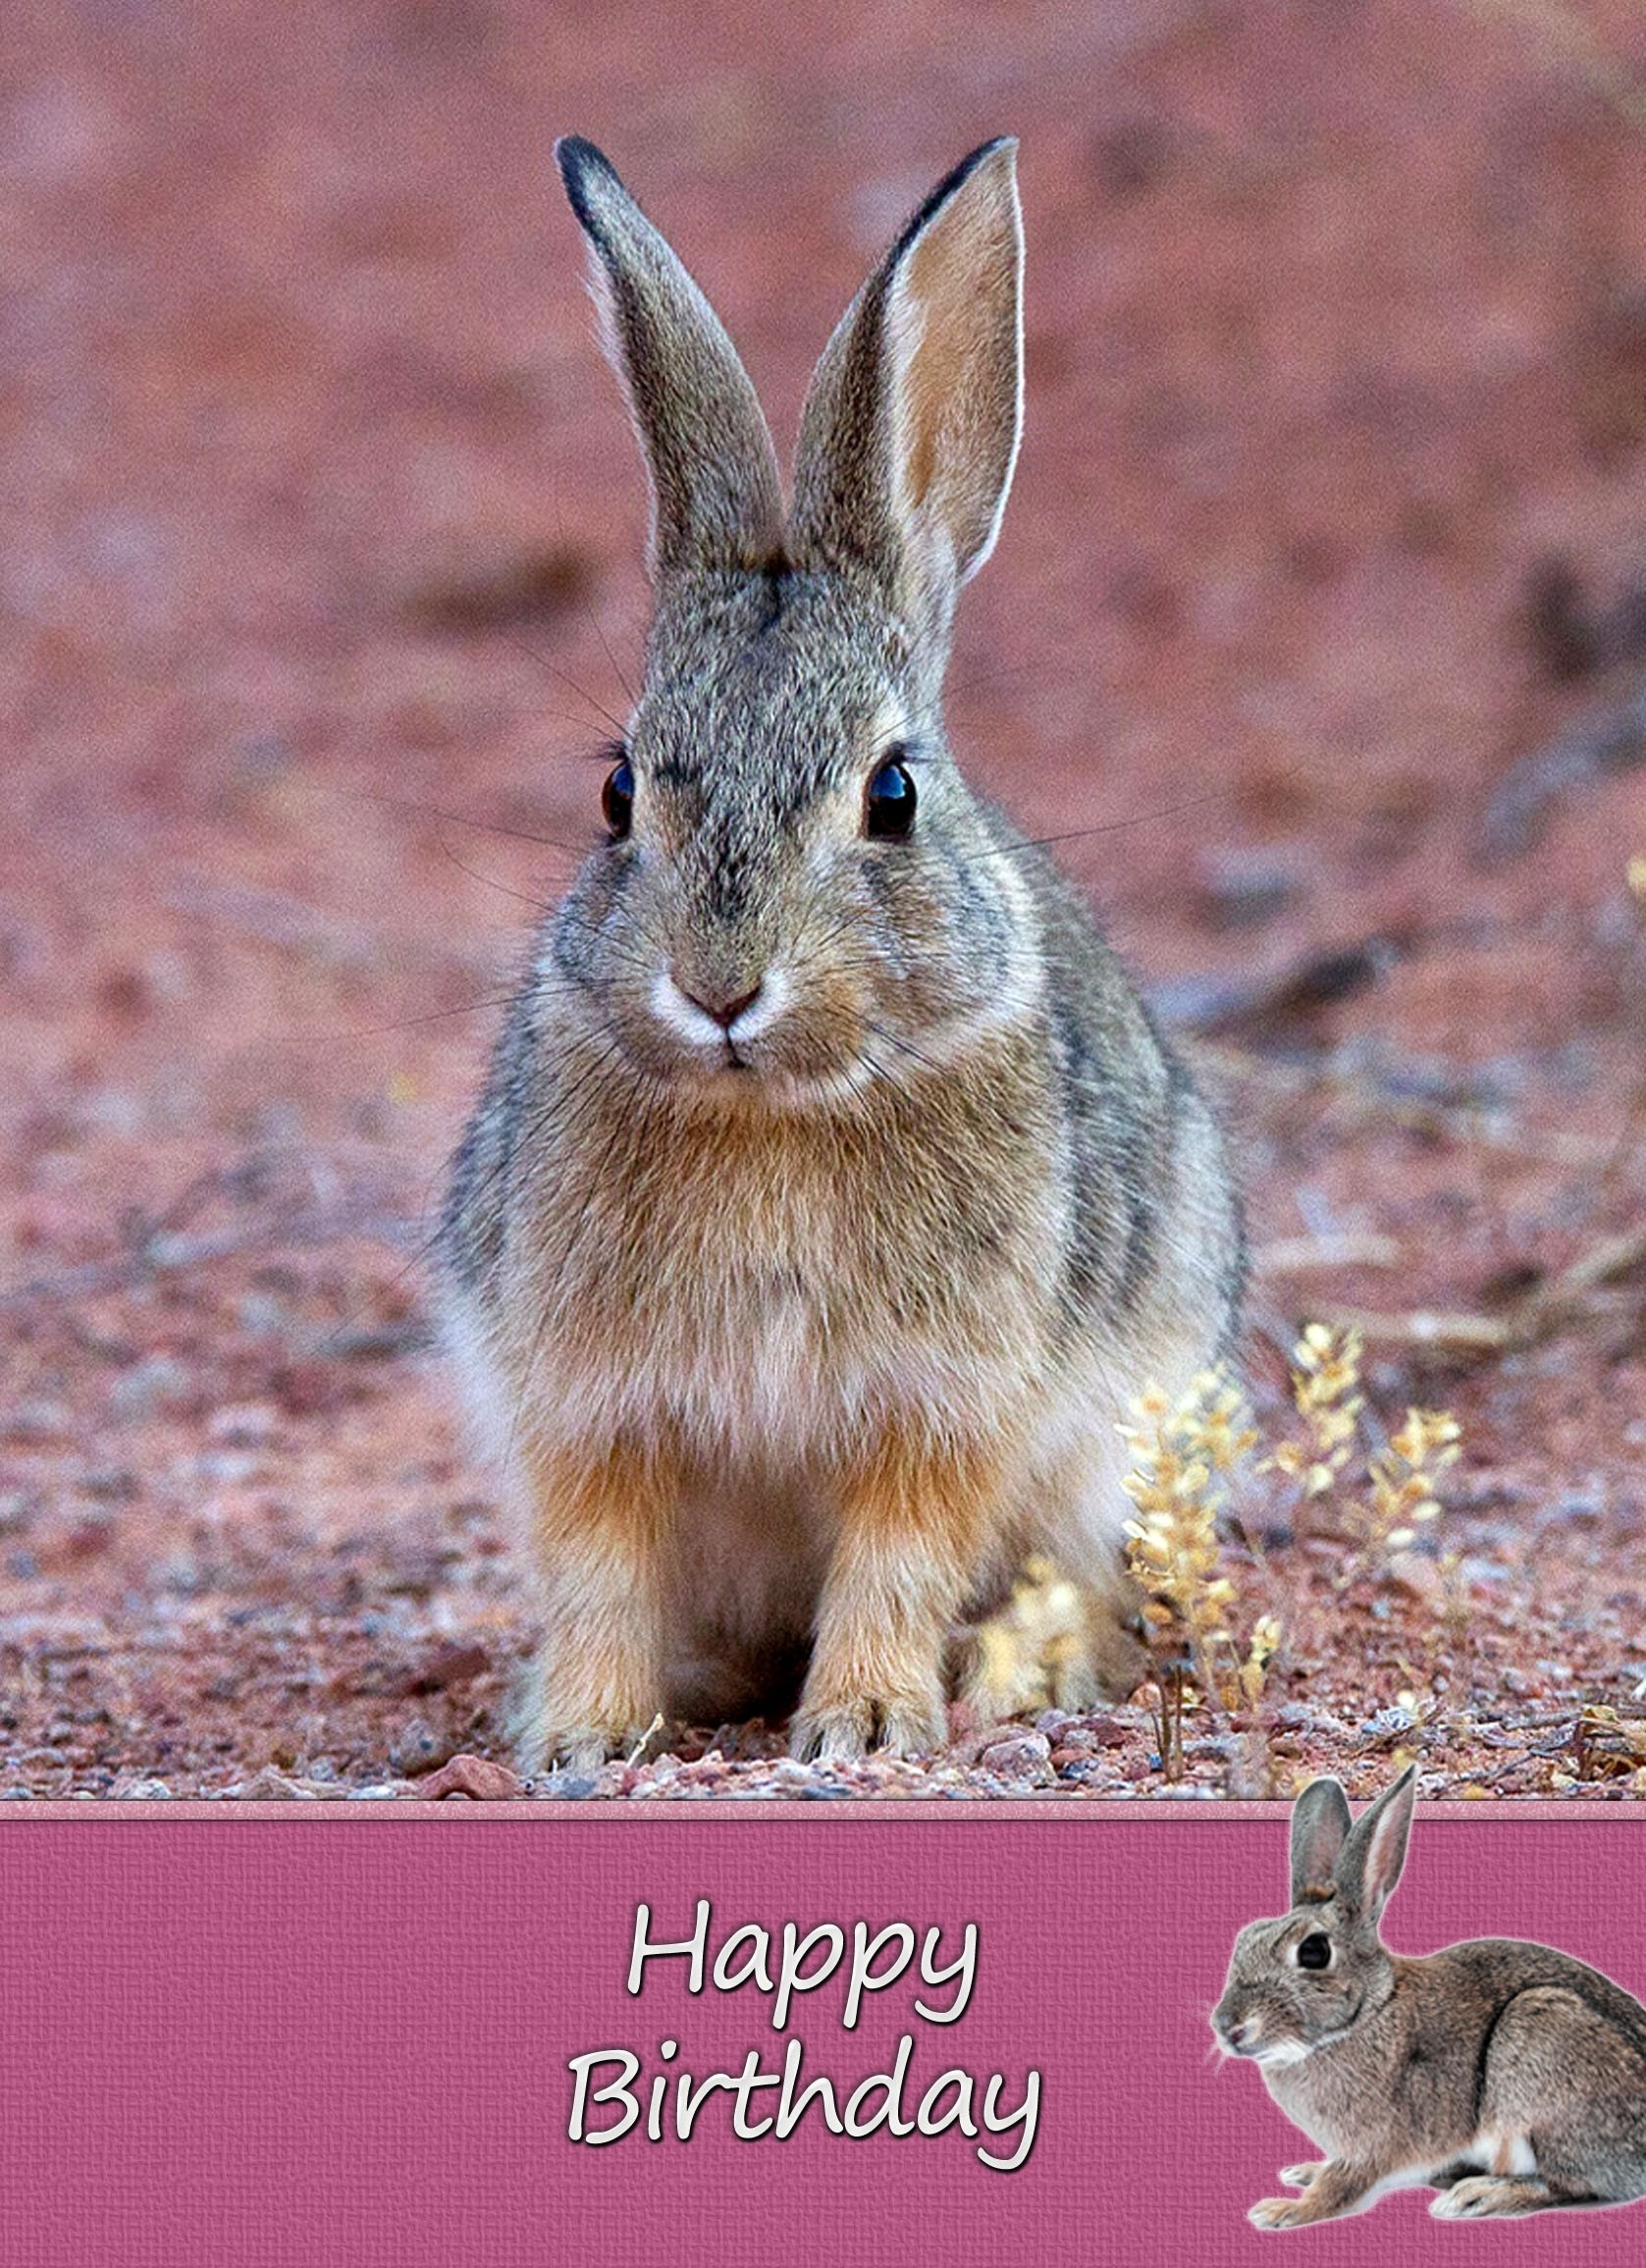 Bunny Rabbit Birthday Card